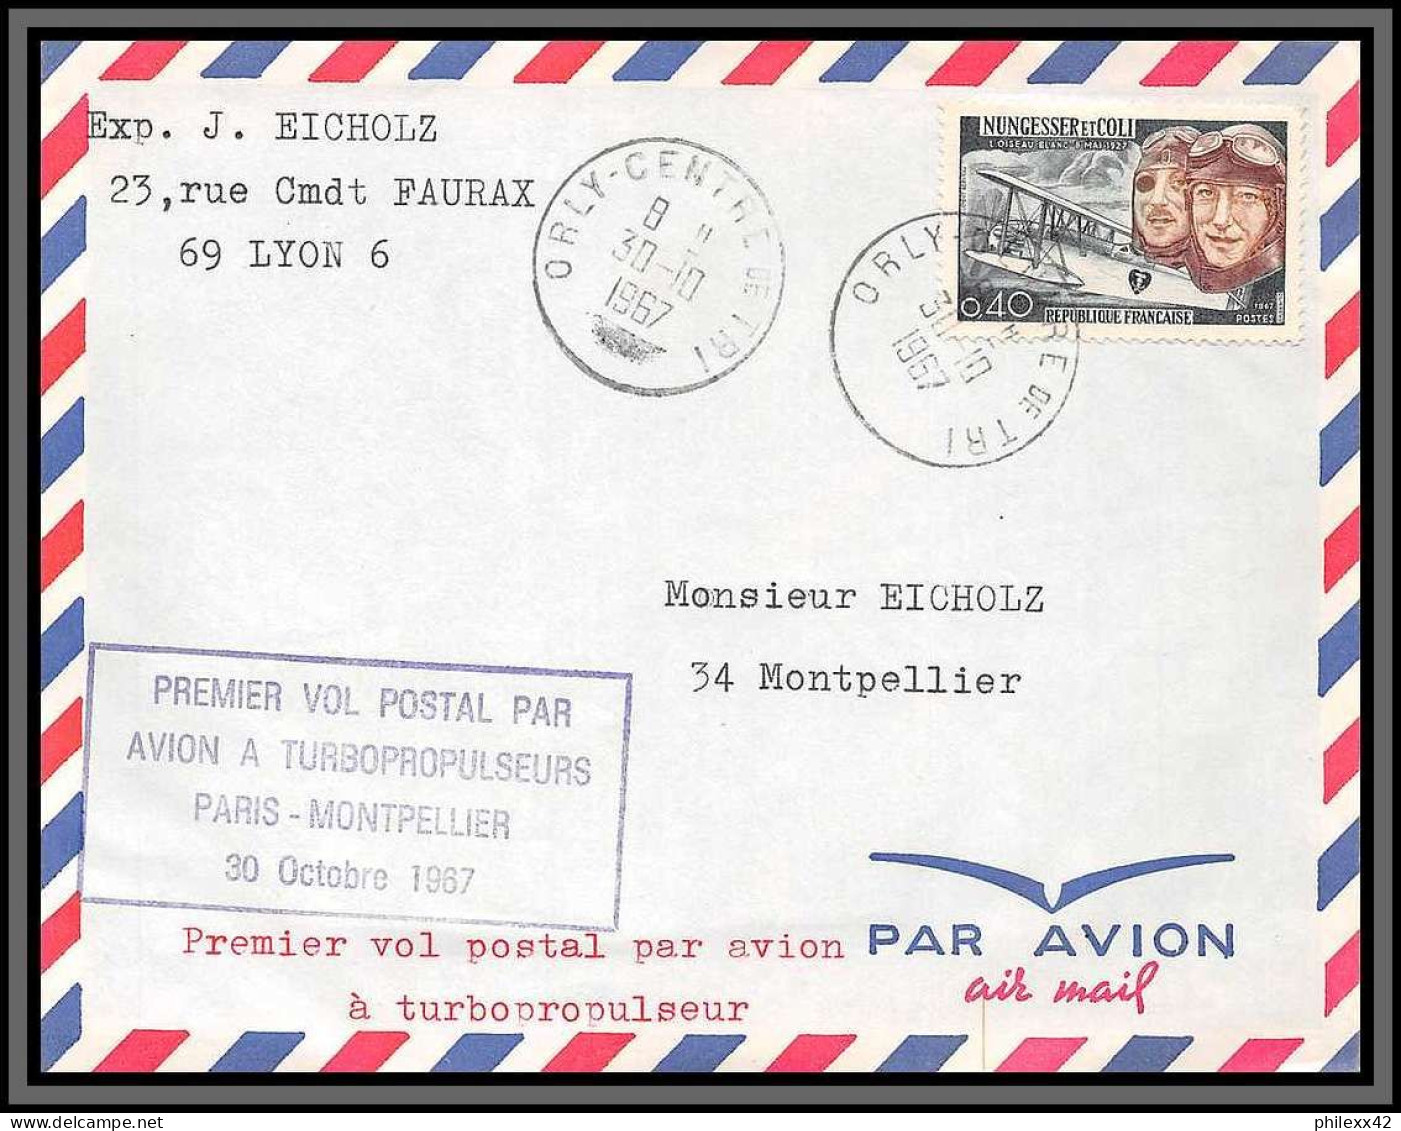 10251 1er Vol Postal Par Avion A Tubopropulseurs Paris Montpellier Orly 30/10/1967 Lettre Cover France Aviation  - Primeros Vuelos